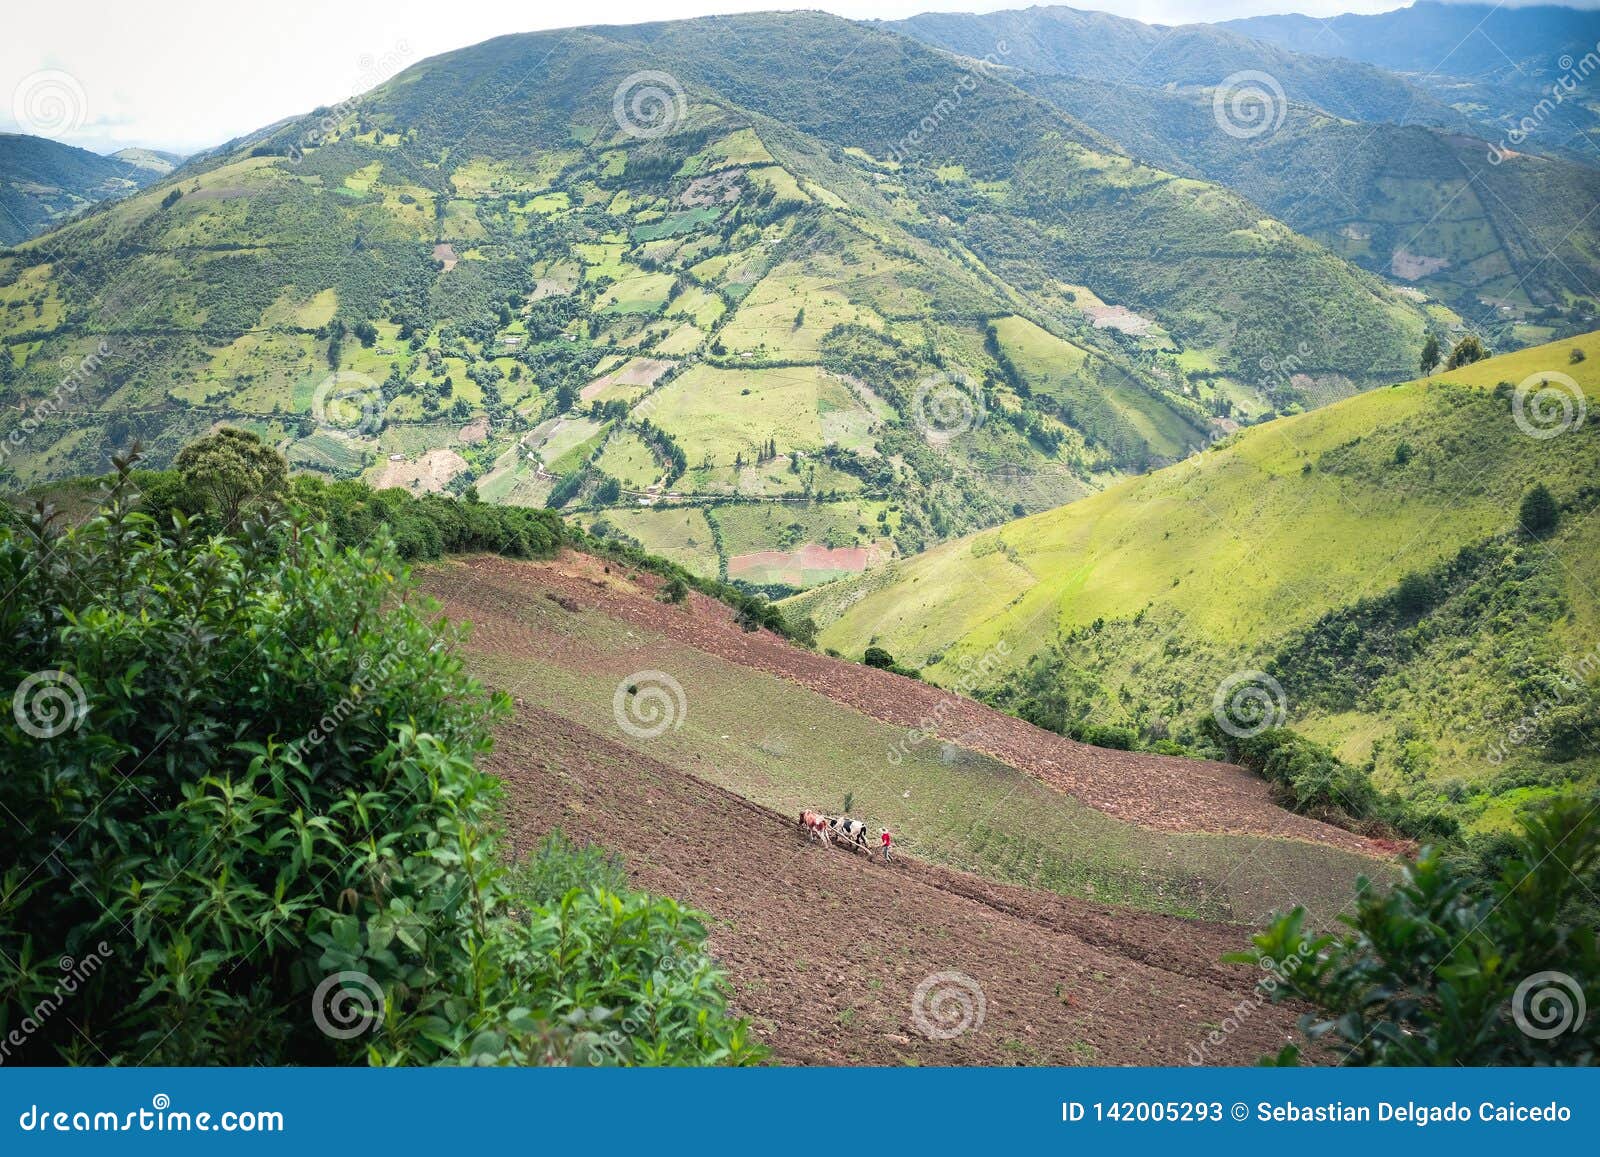 landscape with seeded in norte de santander, colombia